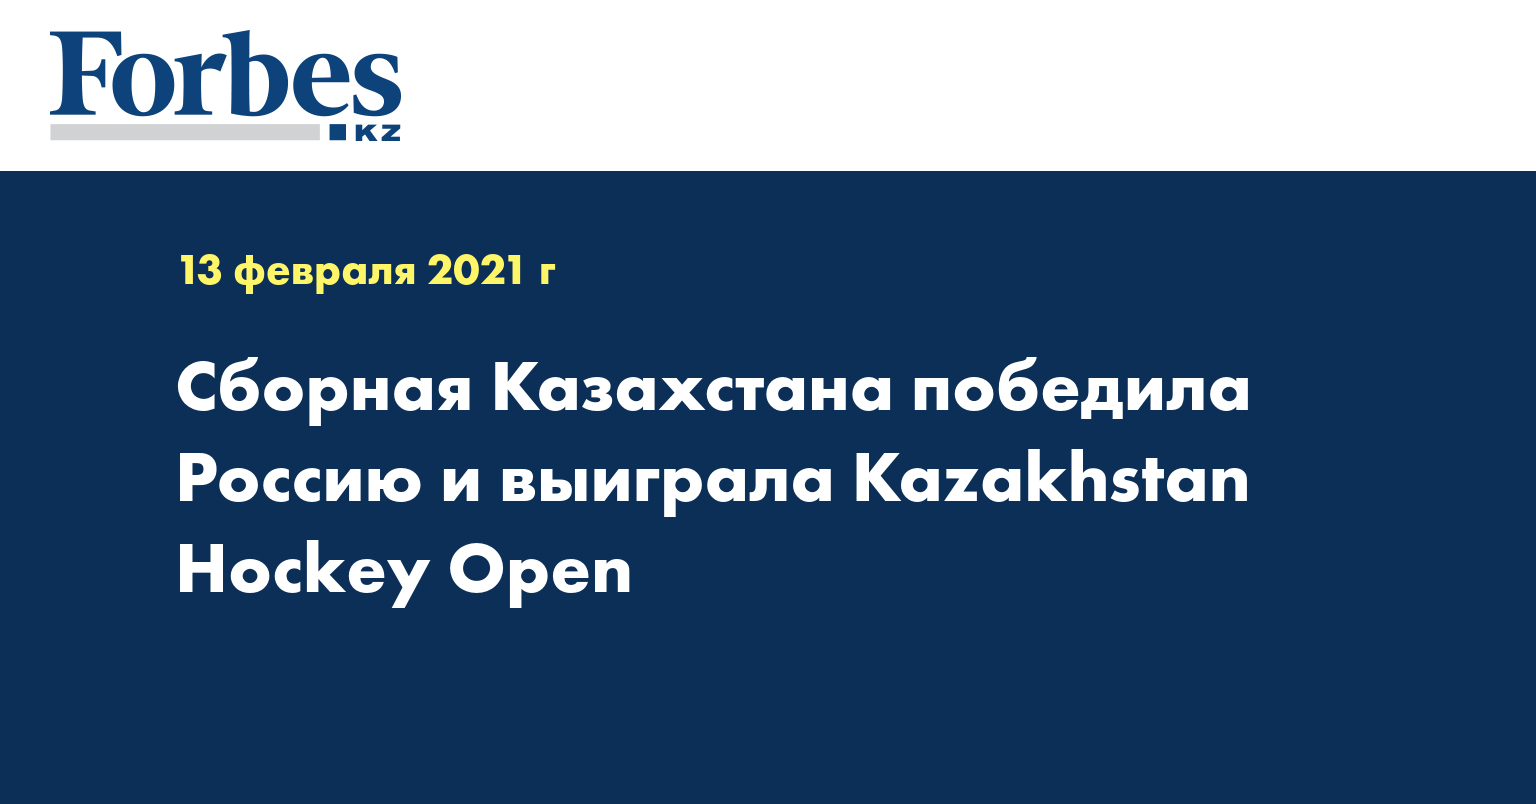 Сборная Казахстана победила Россию и выиграла Kazakhstan Hockey Open